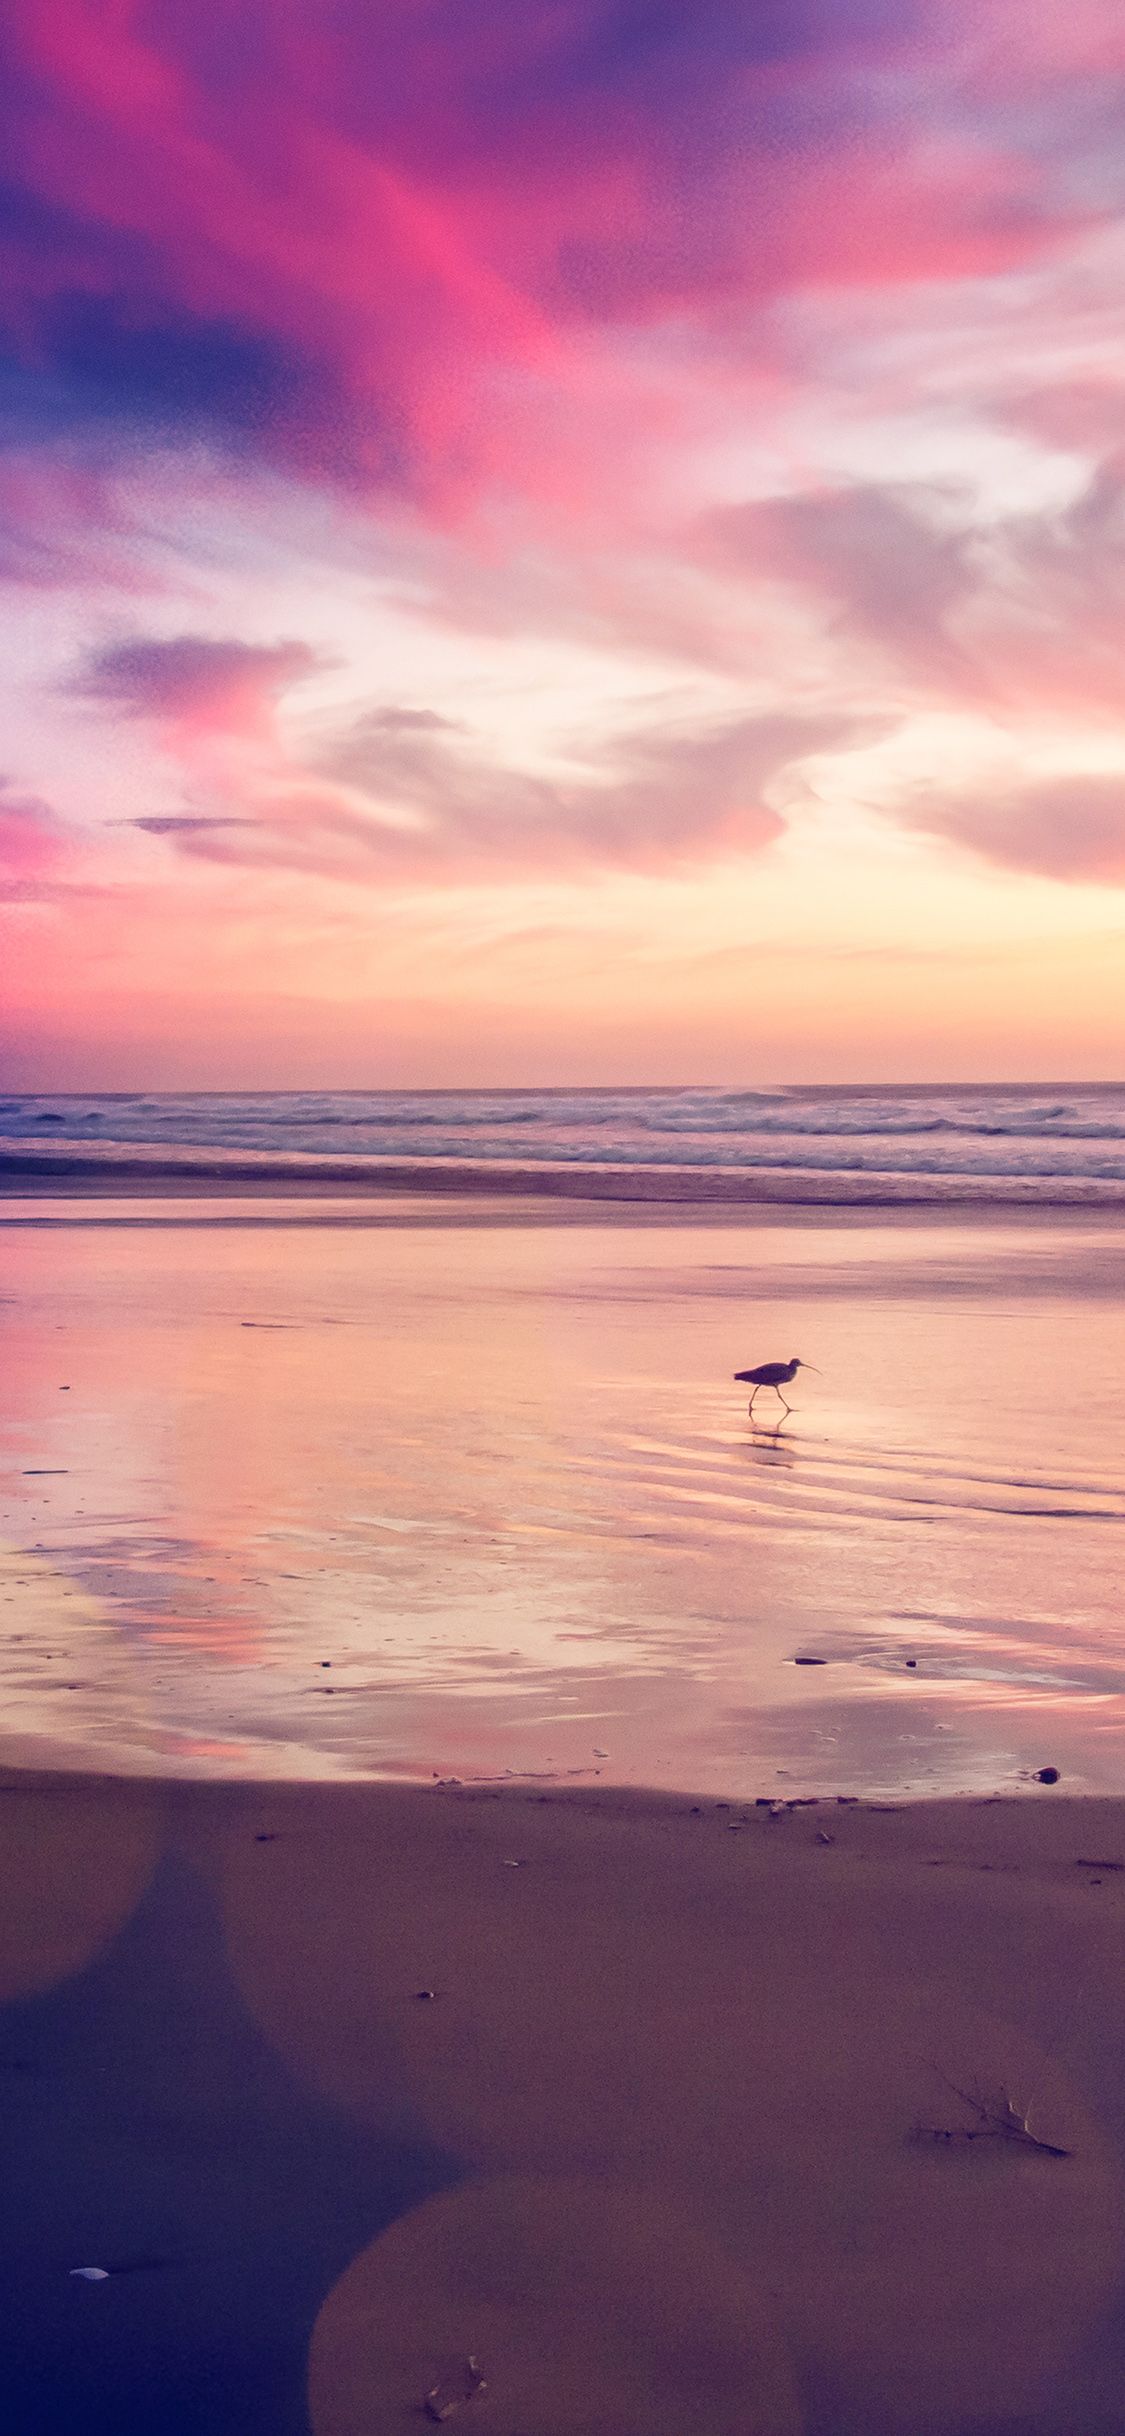 iPhone X wallpaper. sunset beach bird